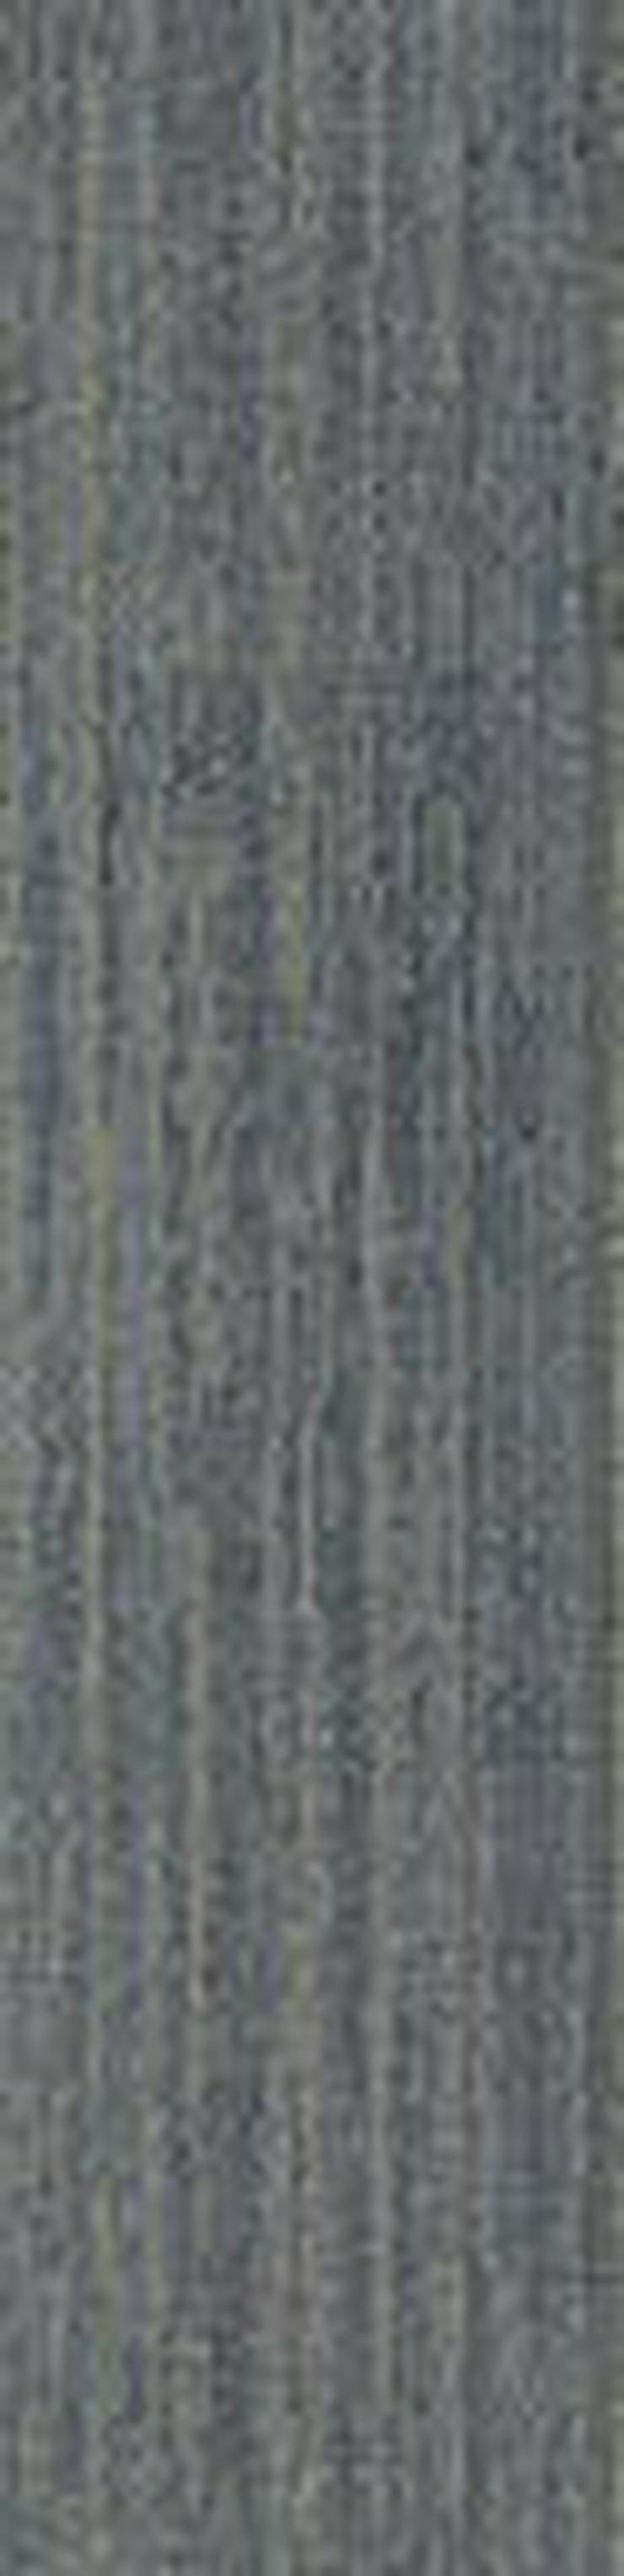 ANGEBOT Schöne 'Laminat' 25x100cm Teppichfliesen von Interface - Teppiche - Bild 5